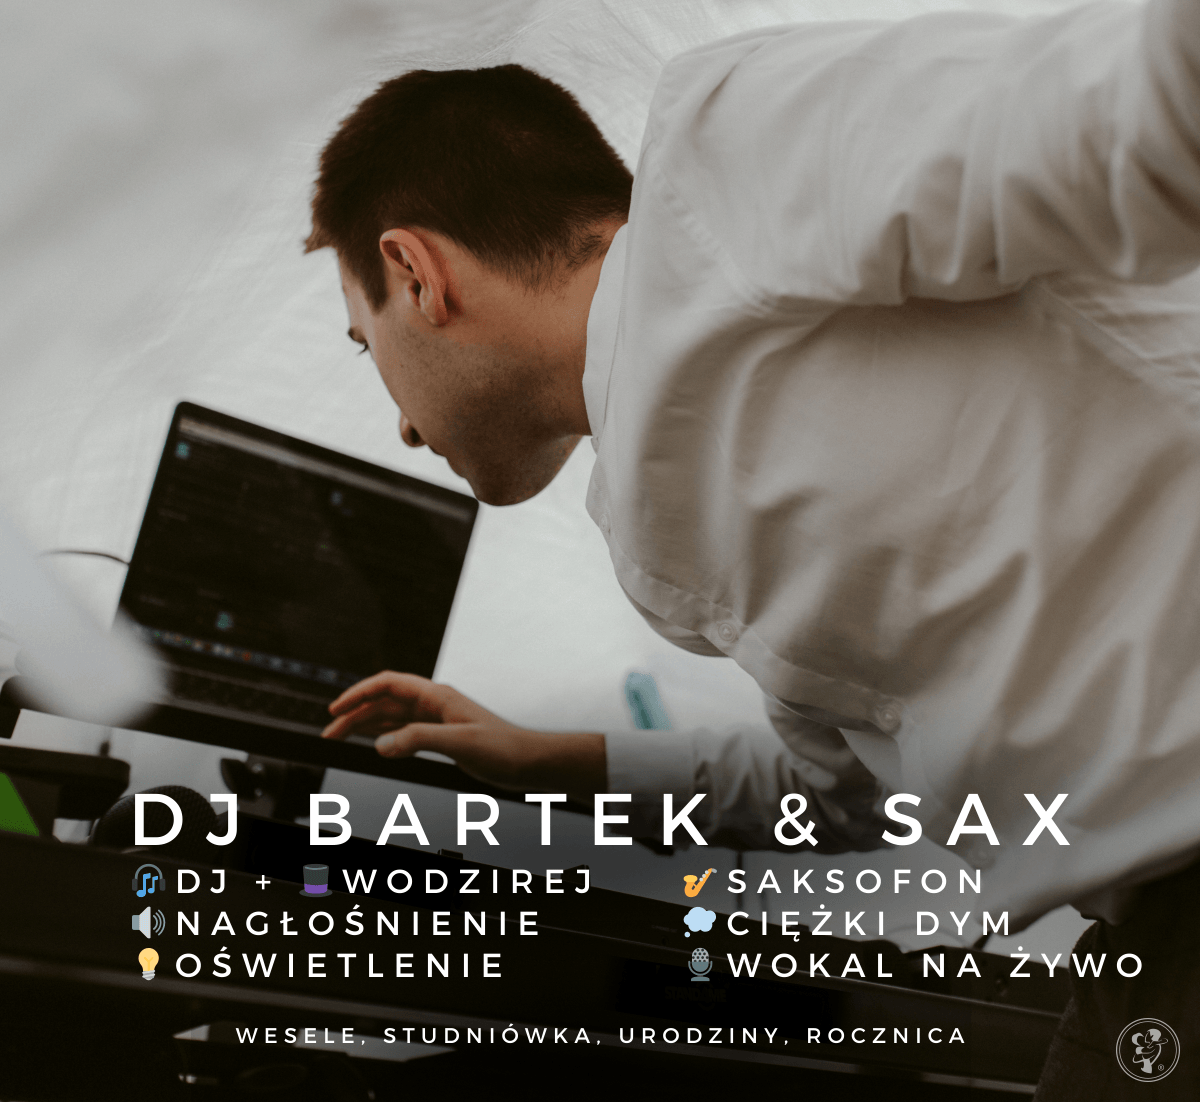 DJ Bartek - Wodzirej, Saksofon | DJ na wesele Gdynia, pomorskie - zdjęcie 1